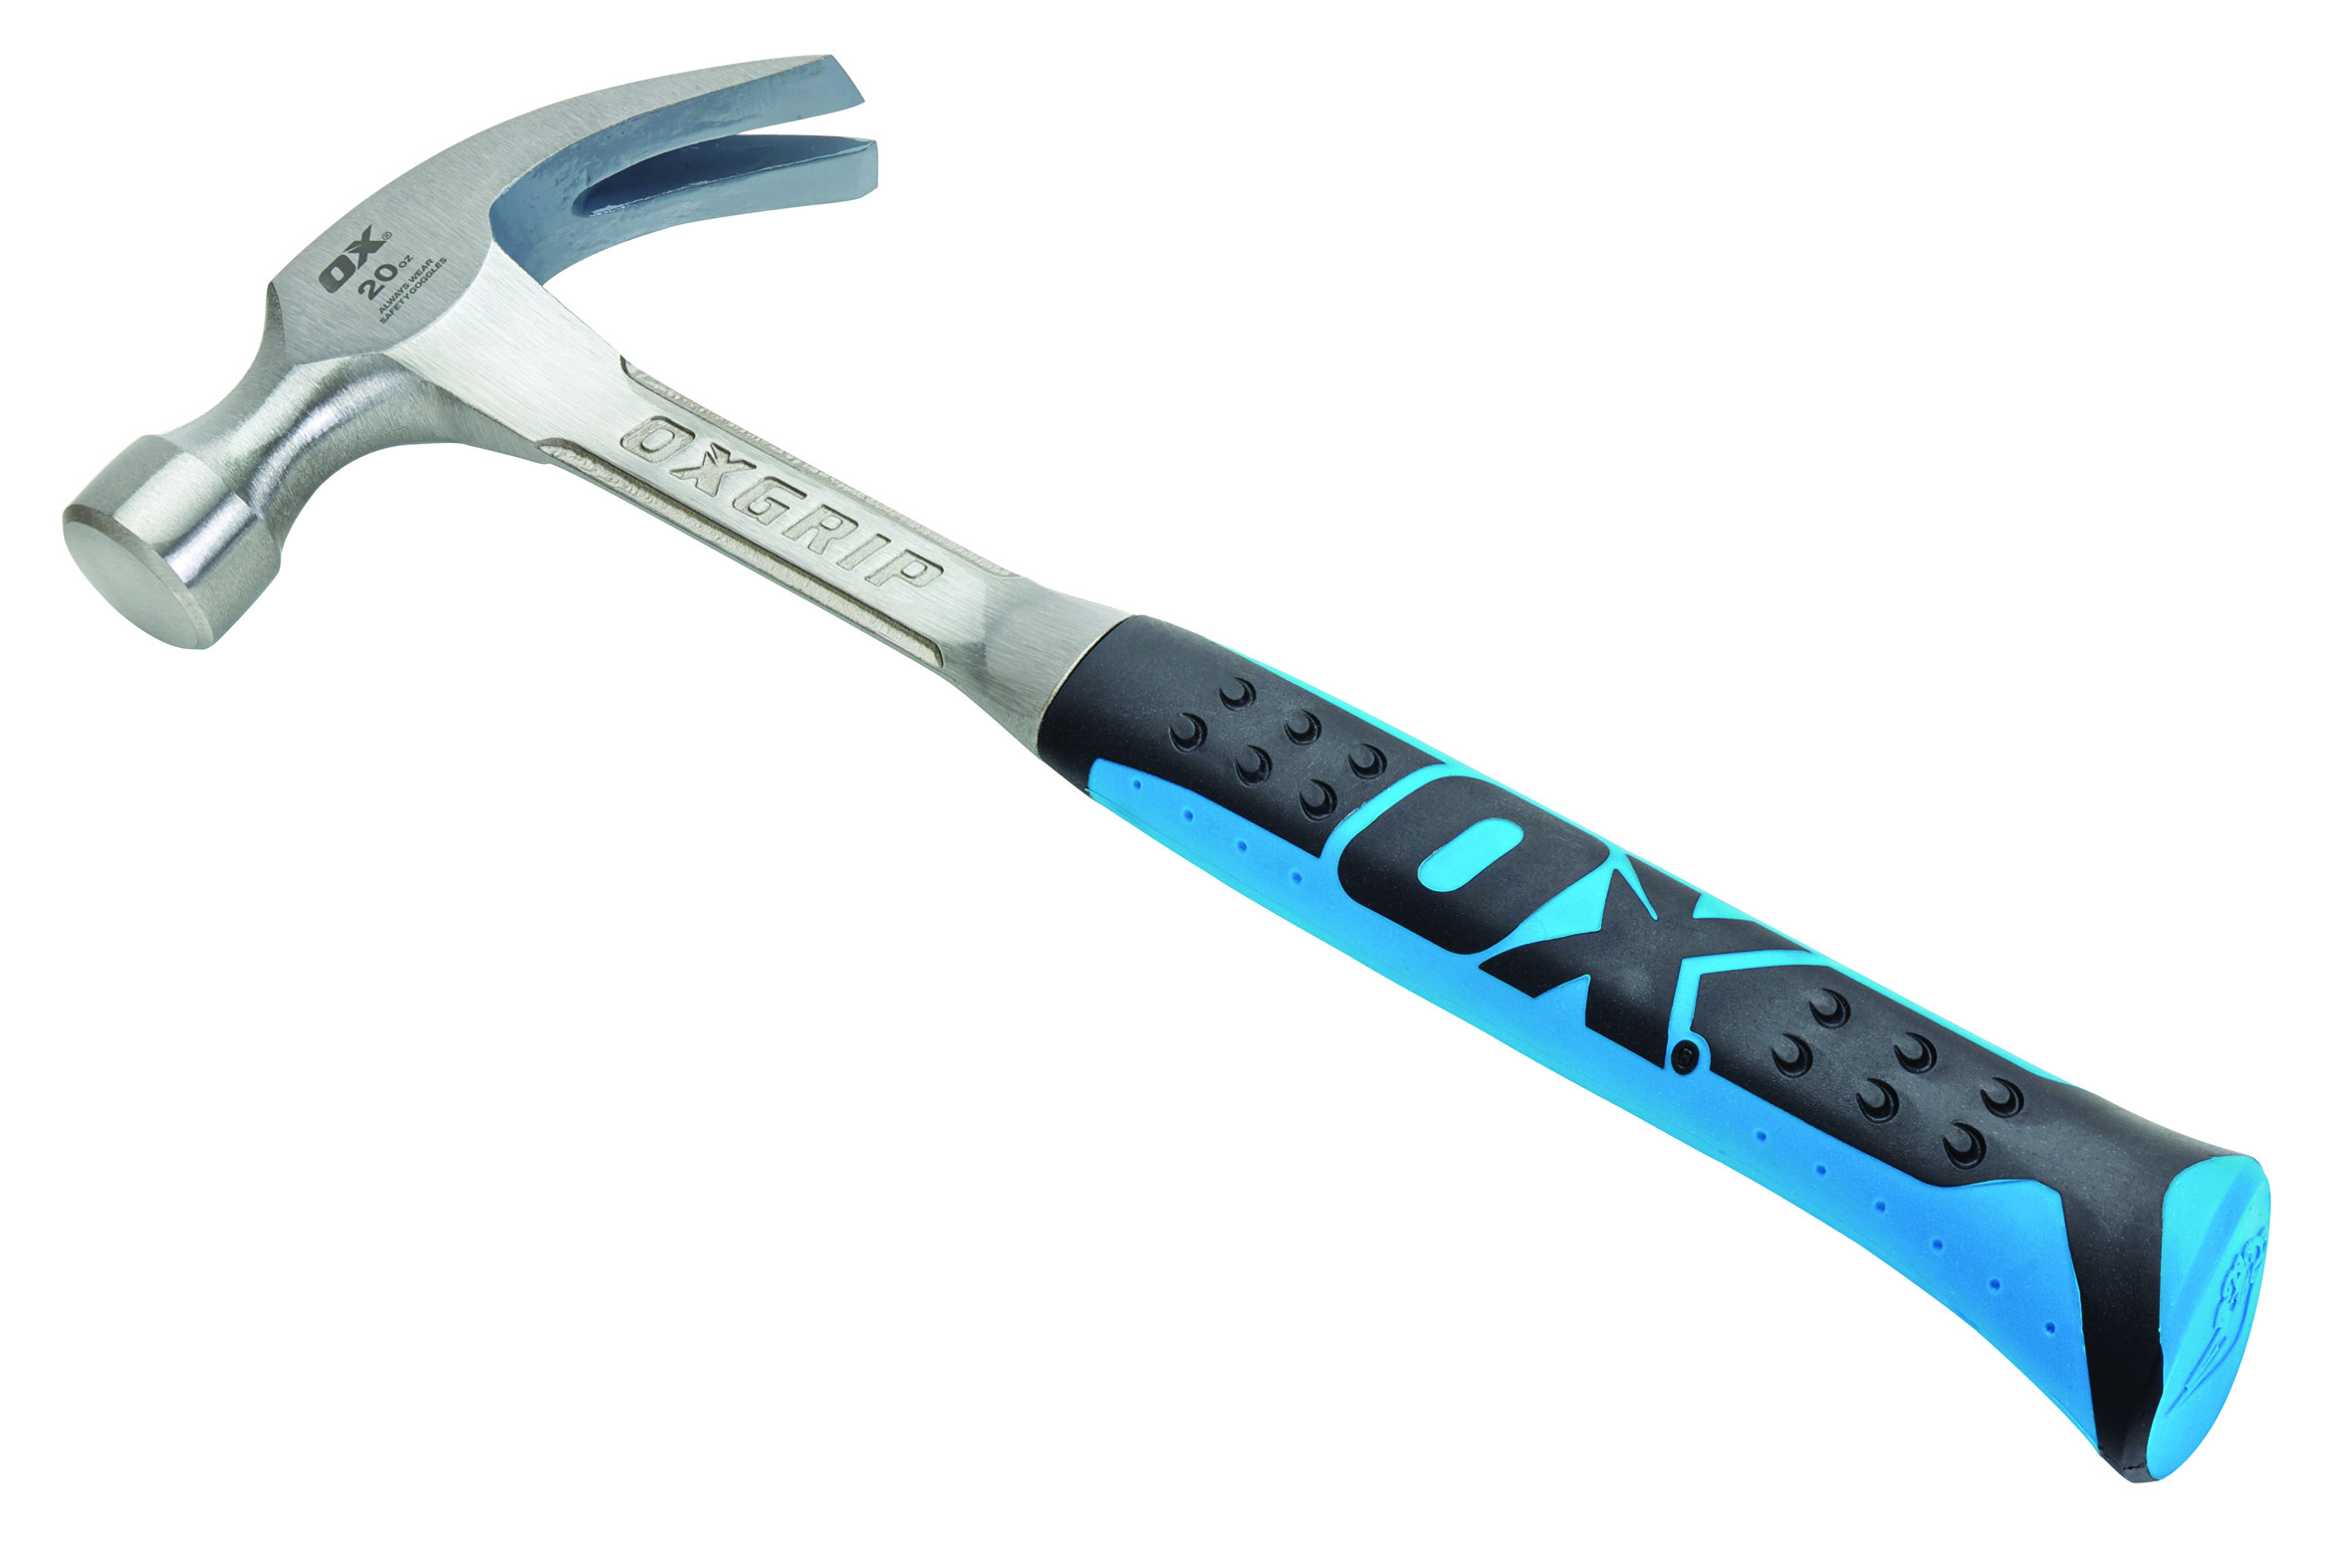 OX Pro Claw Hammer 16oz